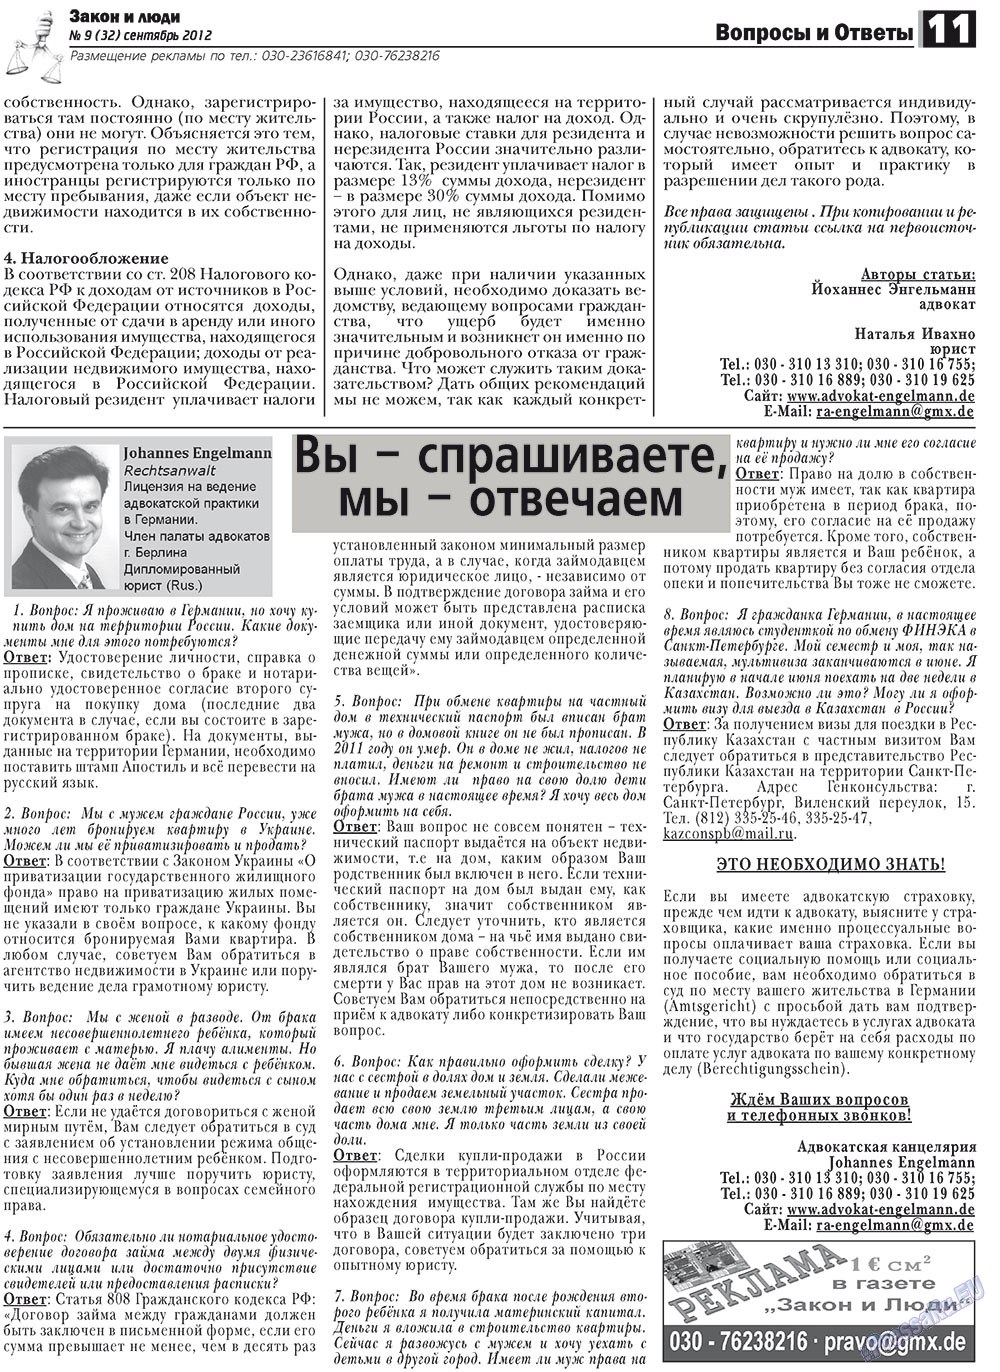 Закон и люди, газета. 2012 №9 стр.11